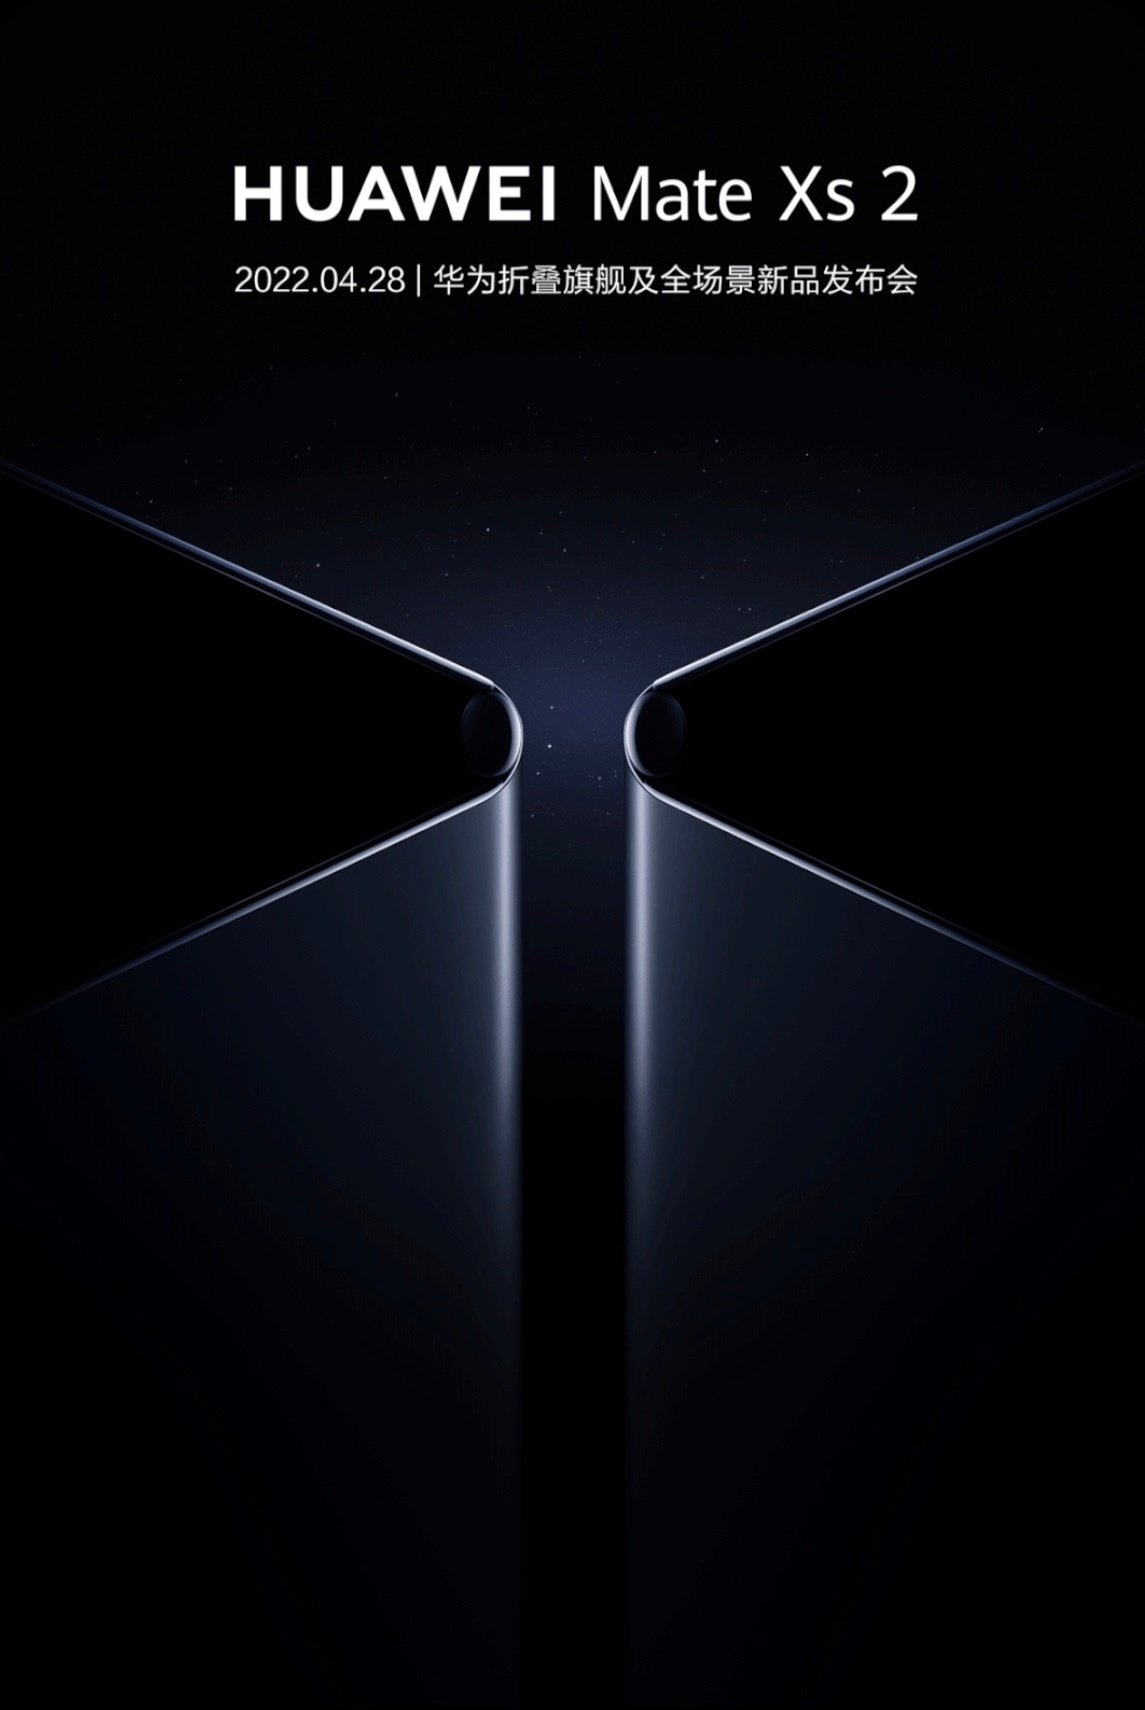 Huawei Mate Xs 2 tanıtım tarihi açıklandı